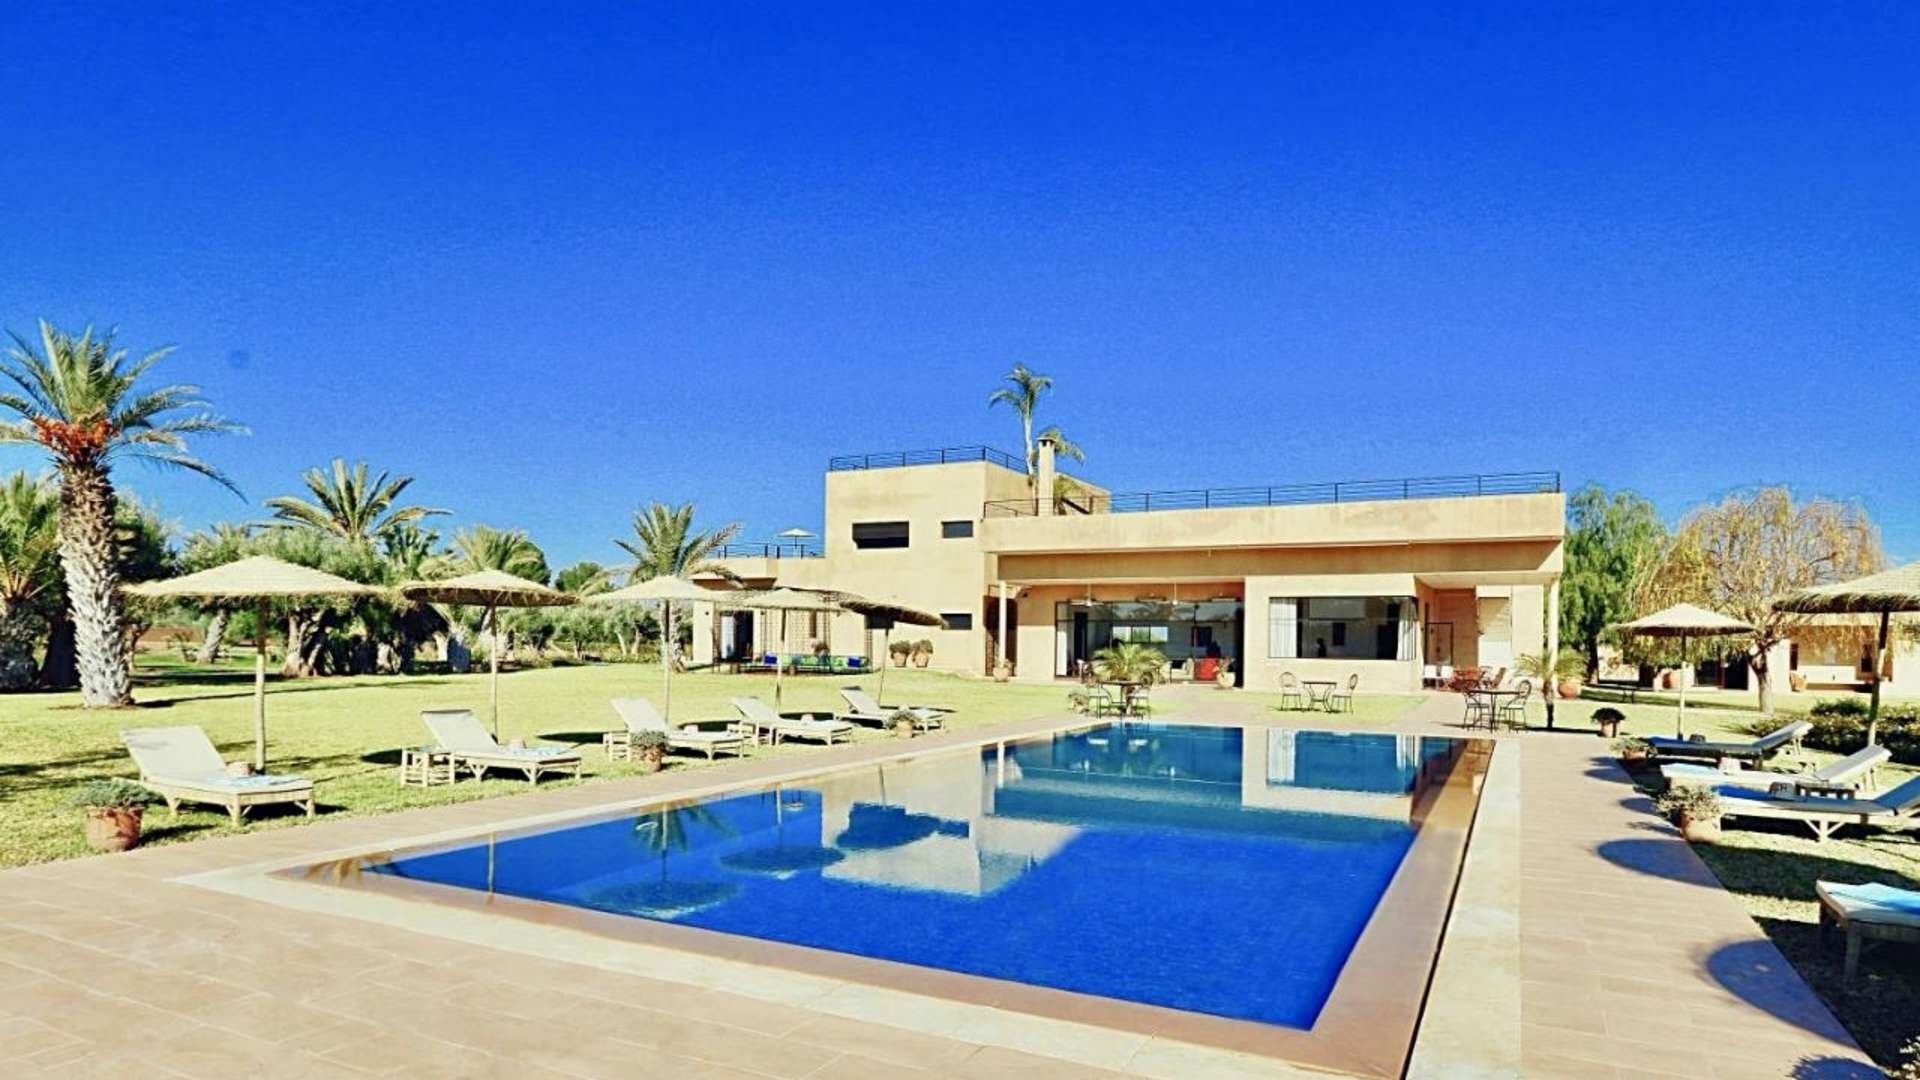 Location de vacances,Villa,Villa 6 chambres dans un domaine de 3 hectares de jardins verdoyants,Marrakech,Route de l'Ourika